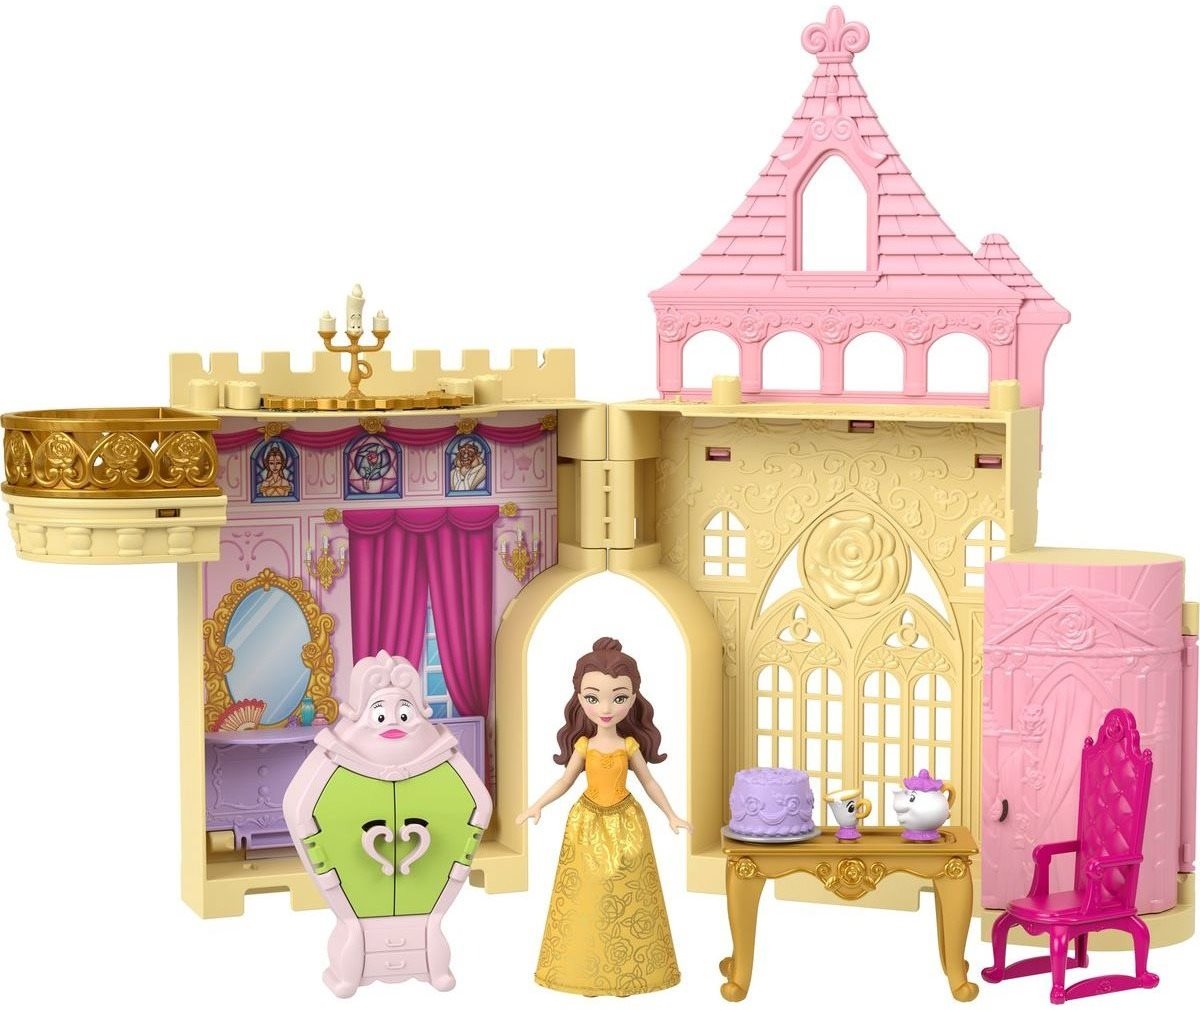 Játékbaba Disney hercegnő kicsi baba: varázslatos meglepetés játékkészlet